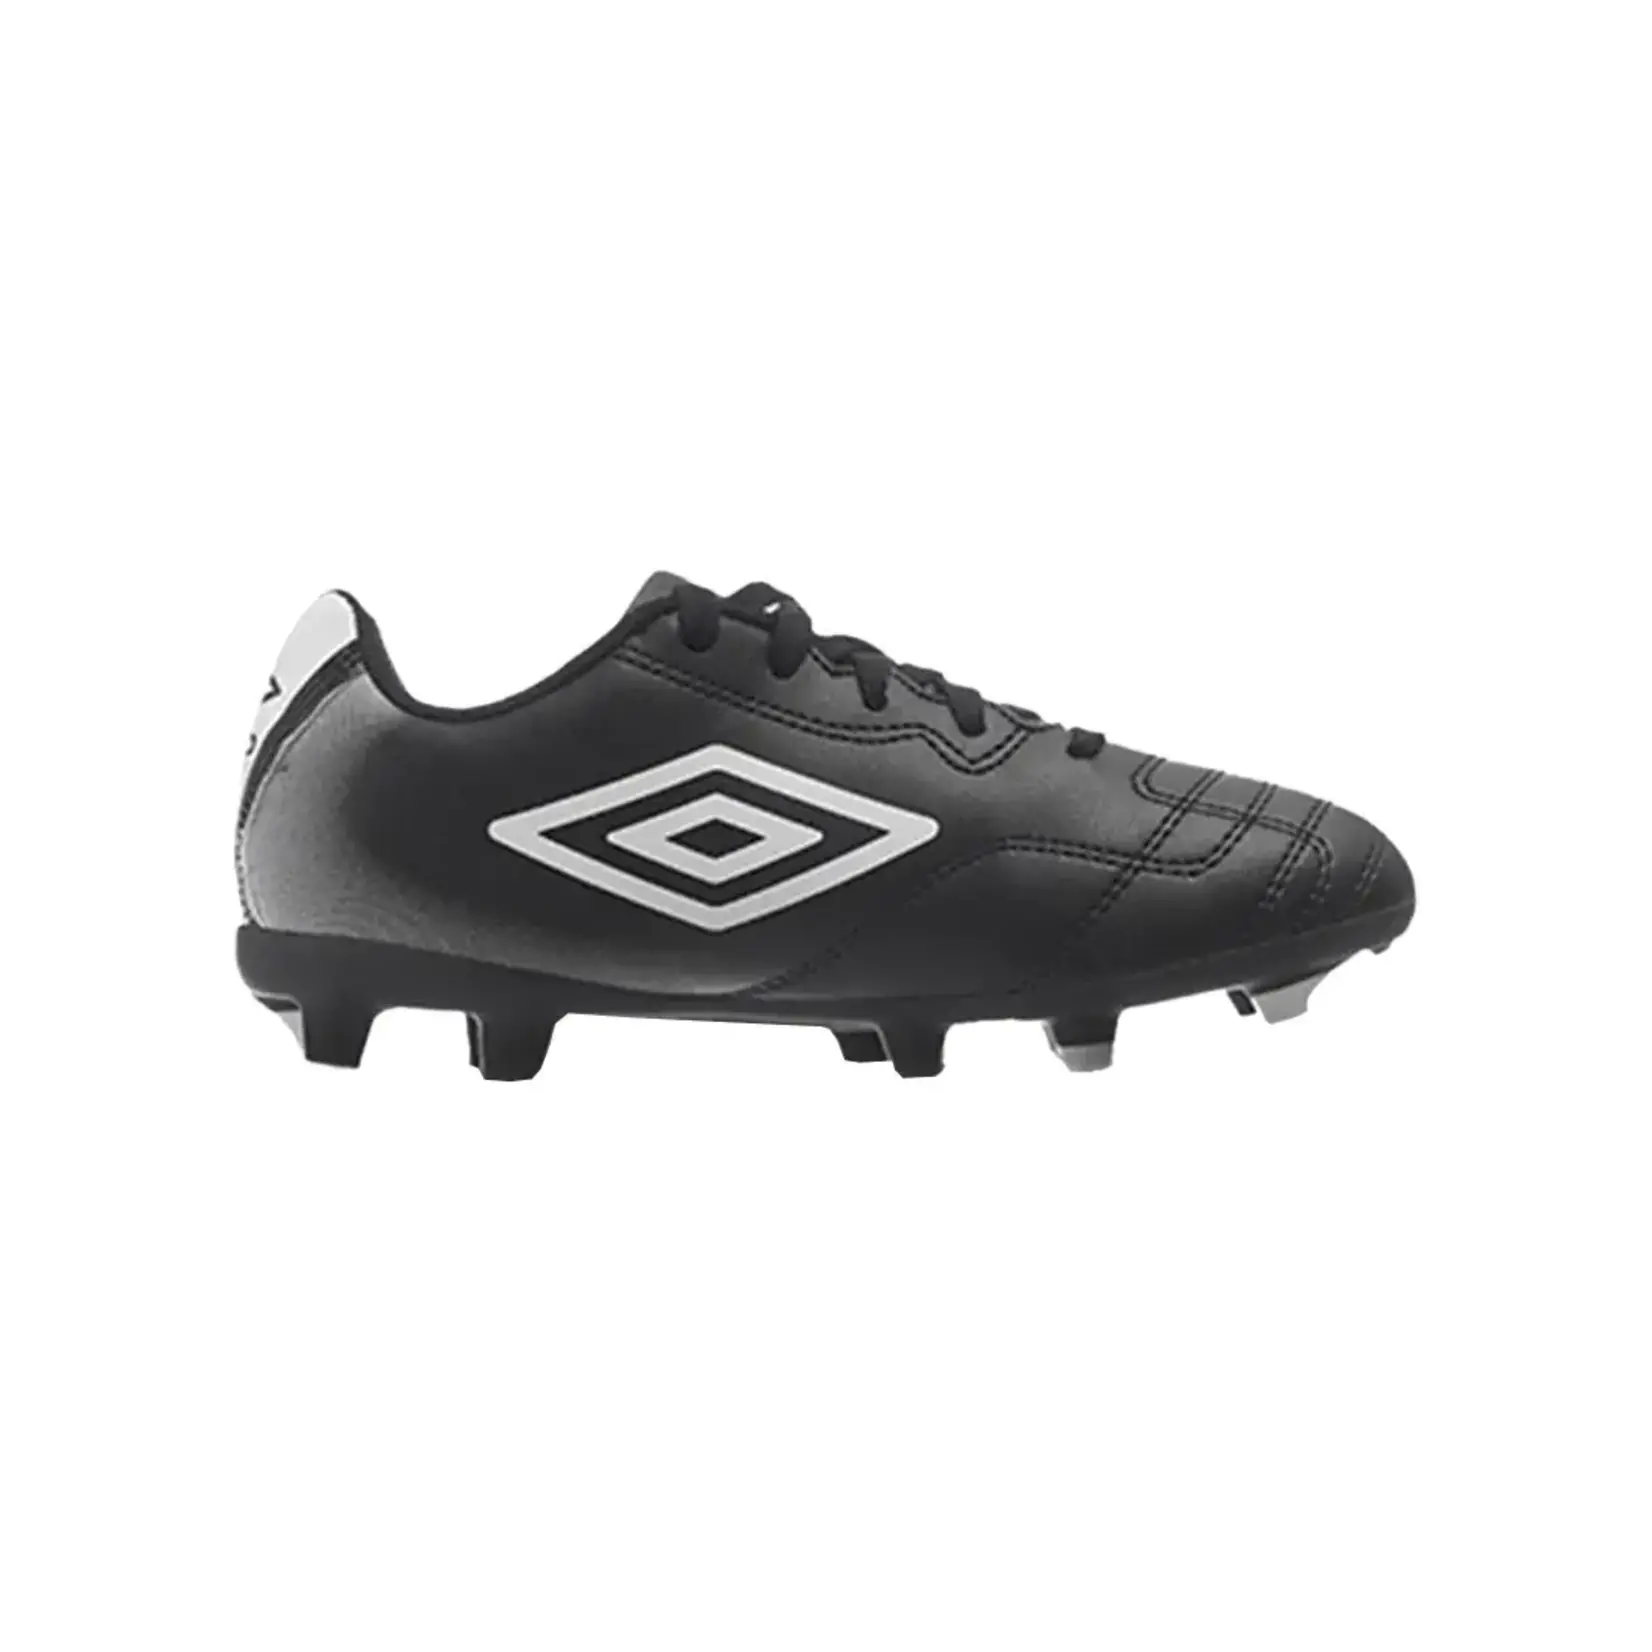 Umbro Soccer Shoes, Classico XI FG, Junior